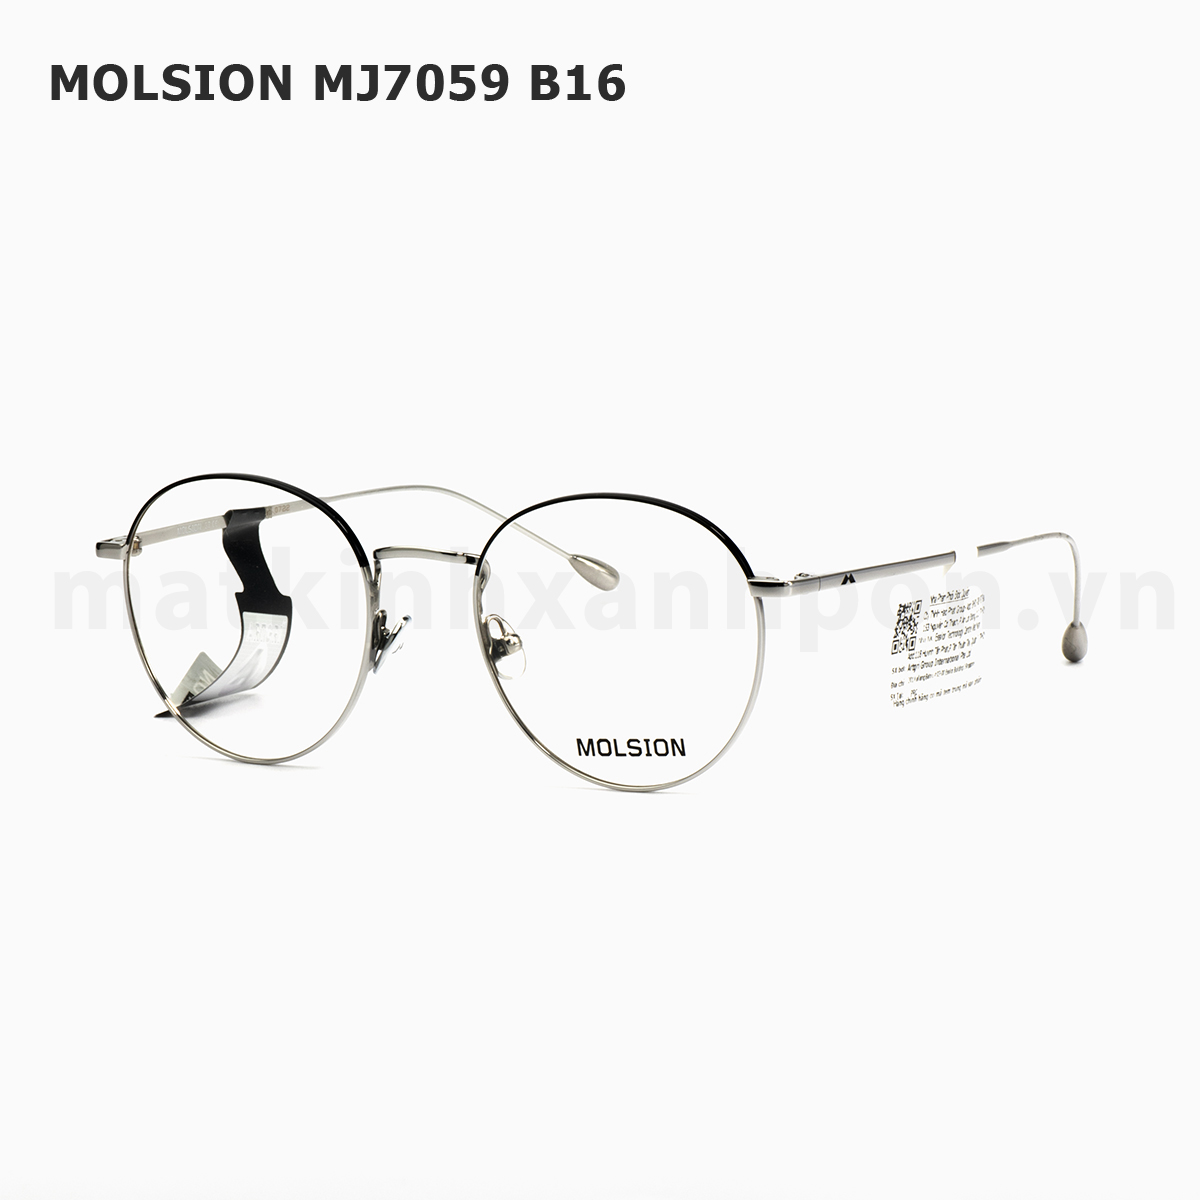 Molsion MJ7059 B16